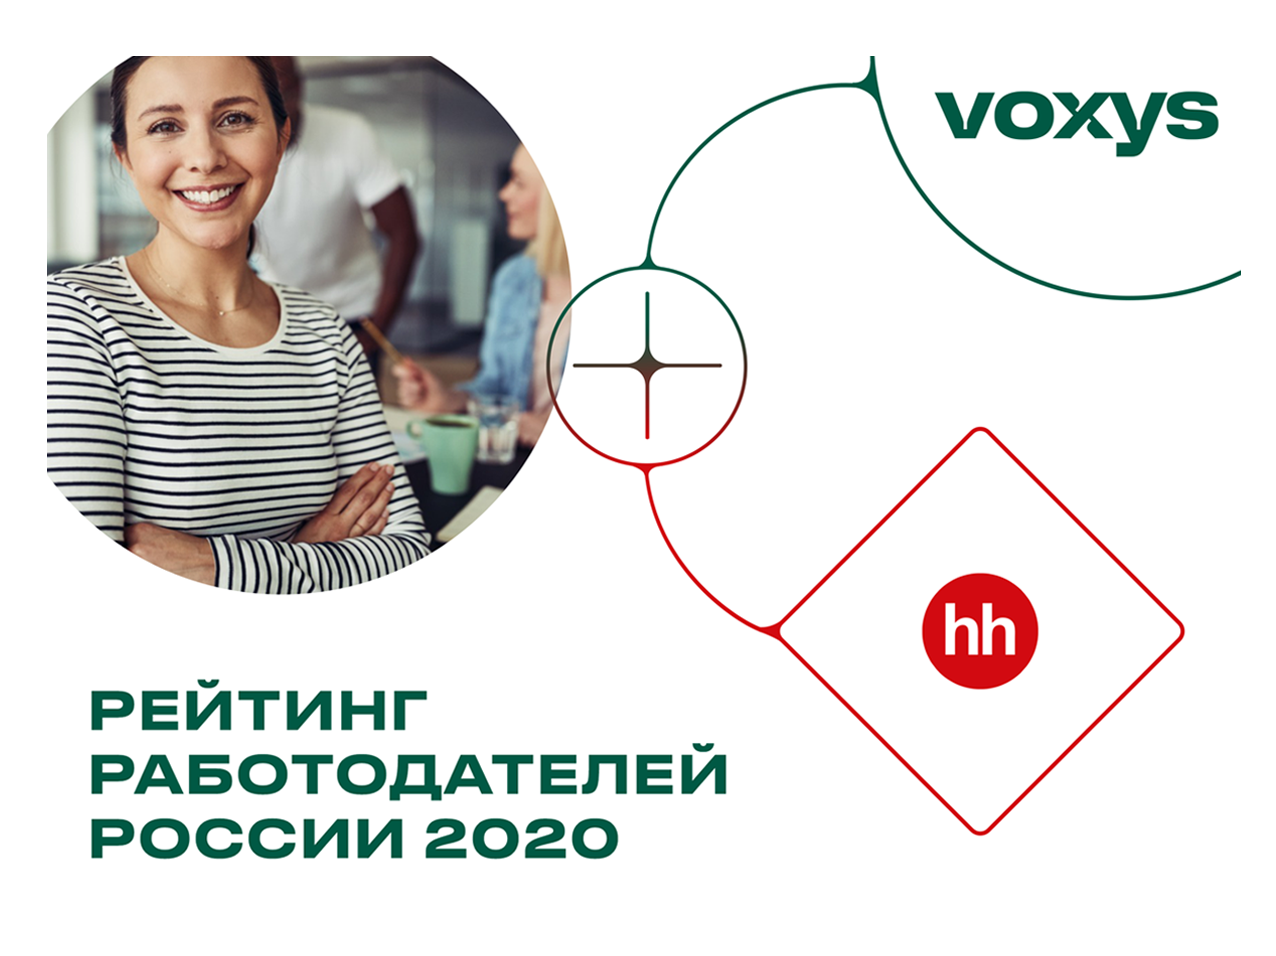 VOXYS участвует в рейтинге работодателей hh.ru